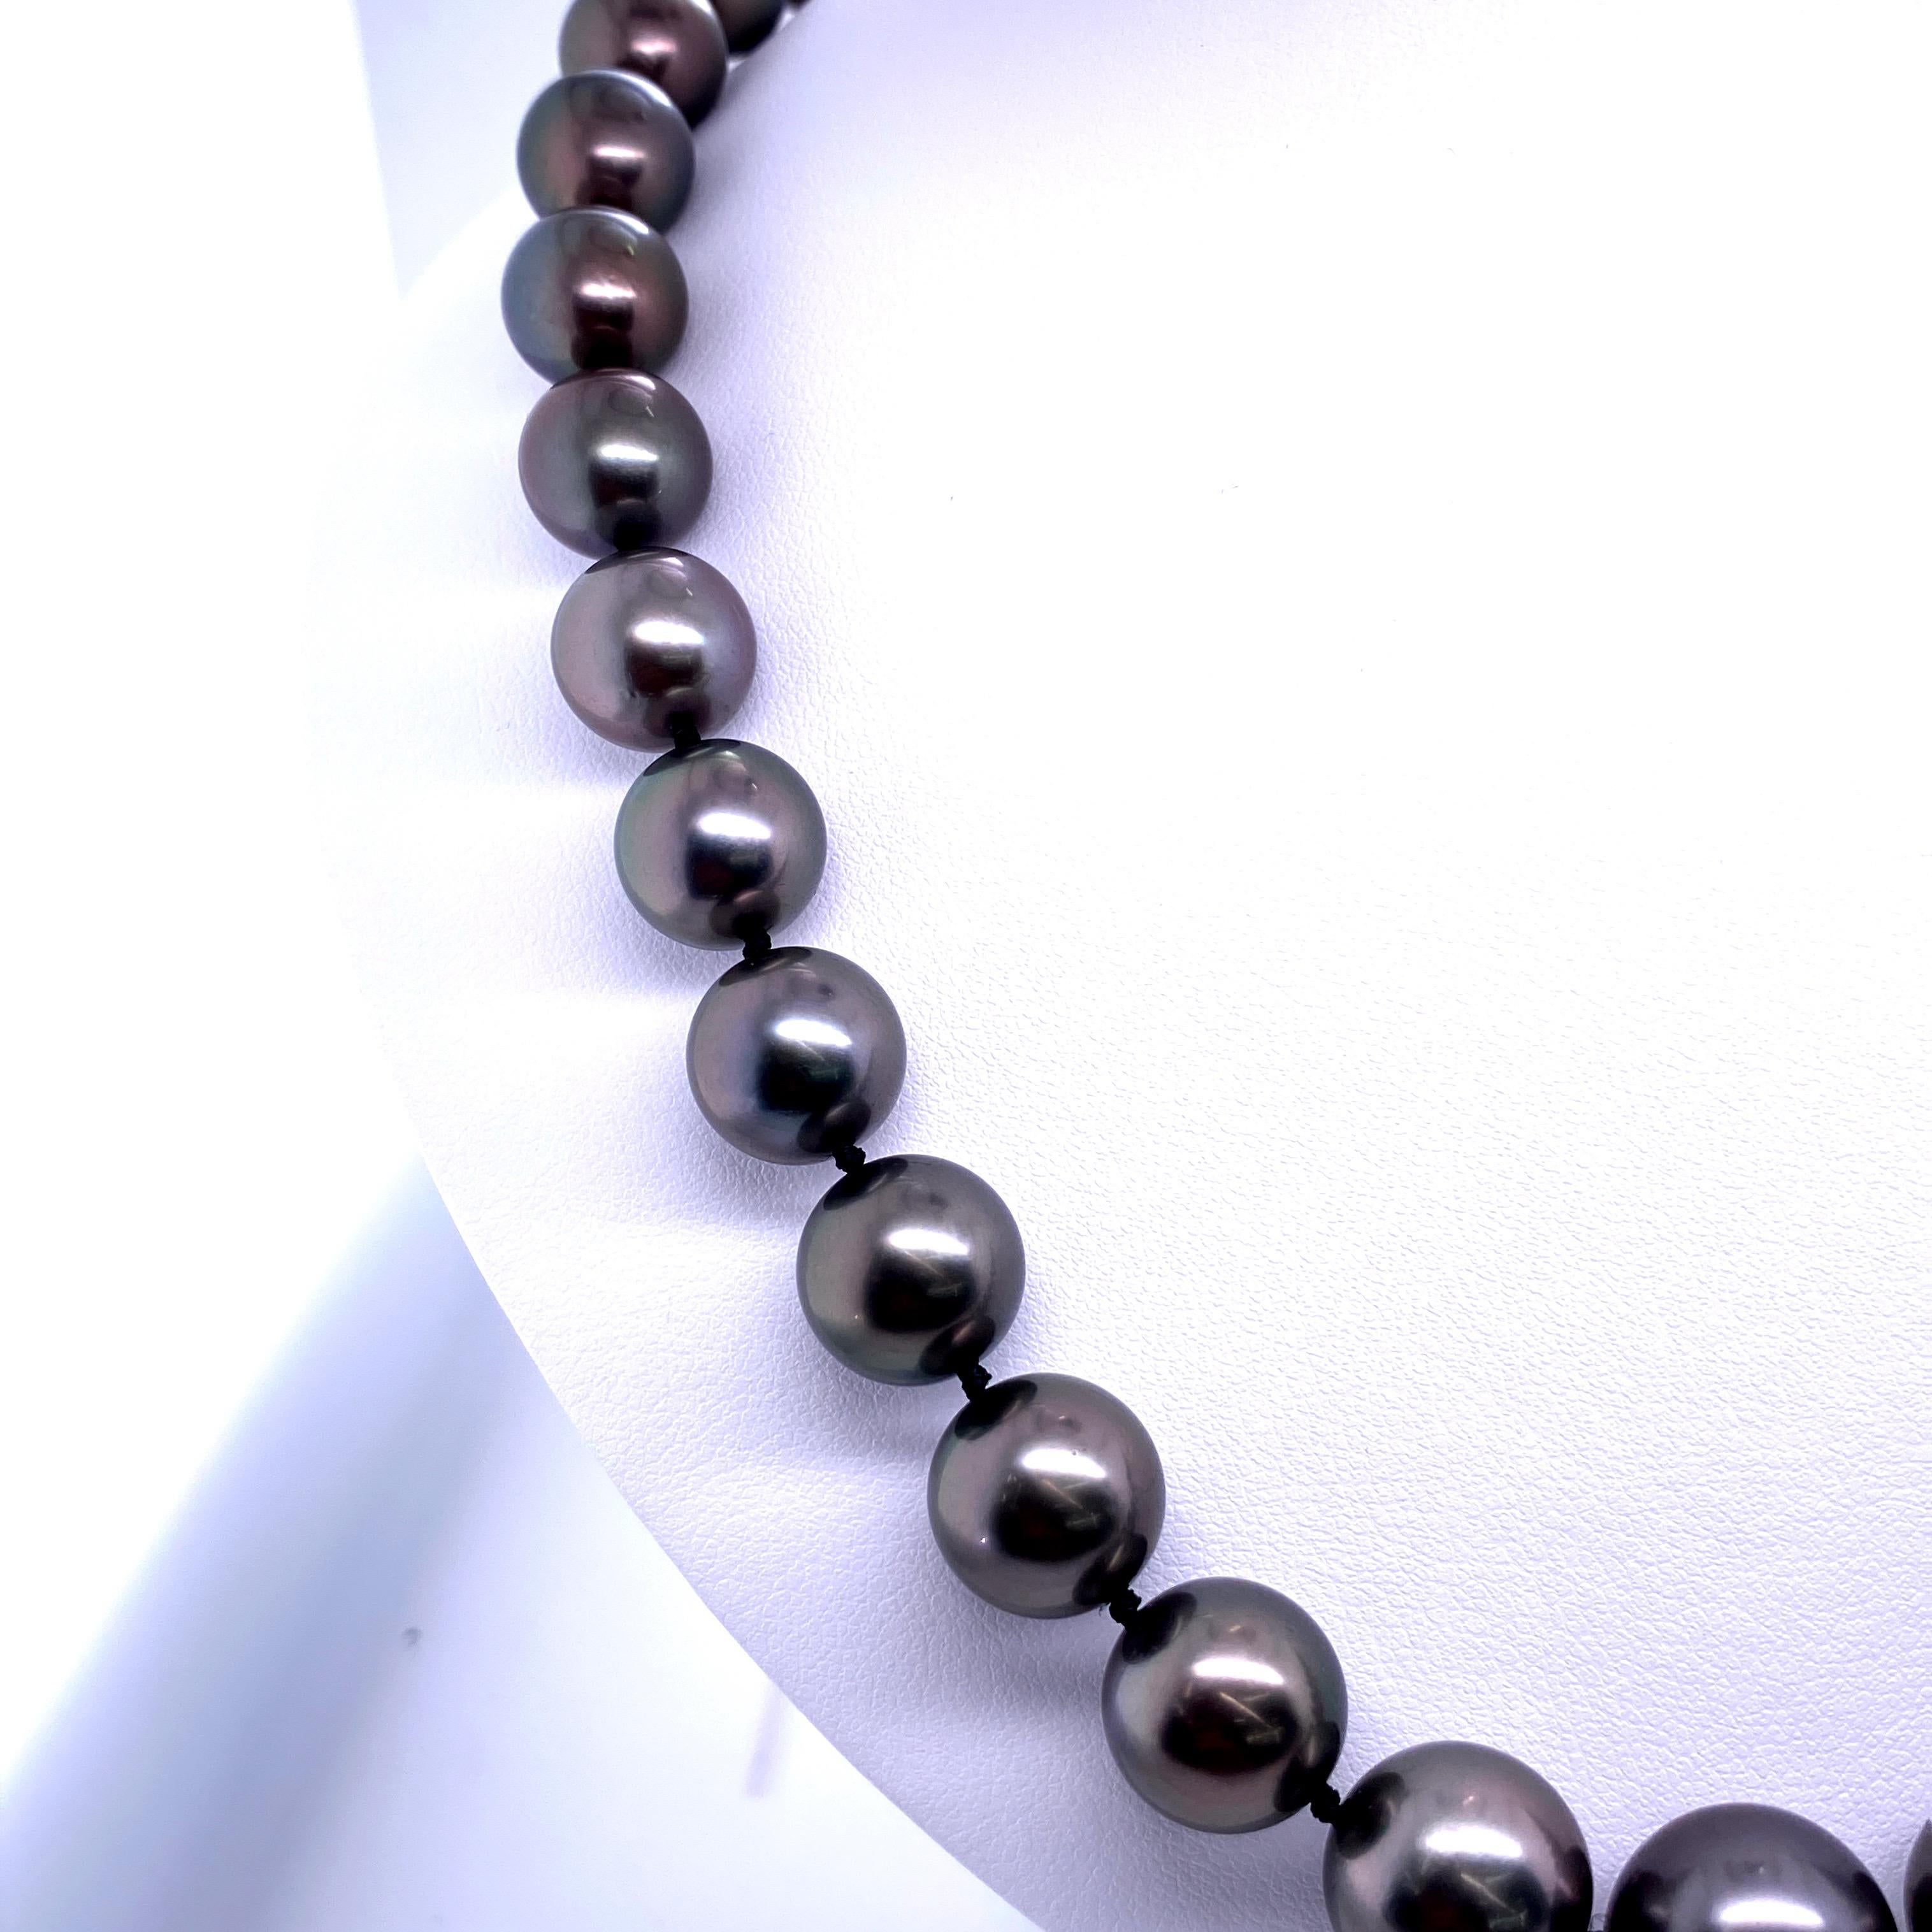 Perfekt abgestimmter Stamm von 37 runden grauen Tahiti-Perlen mit einer Größe von 10,7-13,3 MM mit einem hochglanzpolierten Kugelverschluss aus 14k Weißgold. 

Qualität der Perlen: AAA
Perlglanz: AAA Ausgezeichnet
Perlmutt : Sehr dick

Der Strang